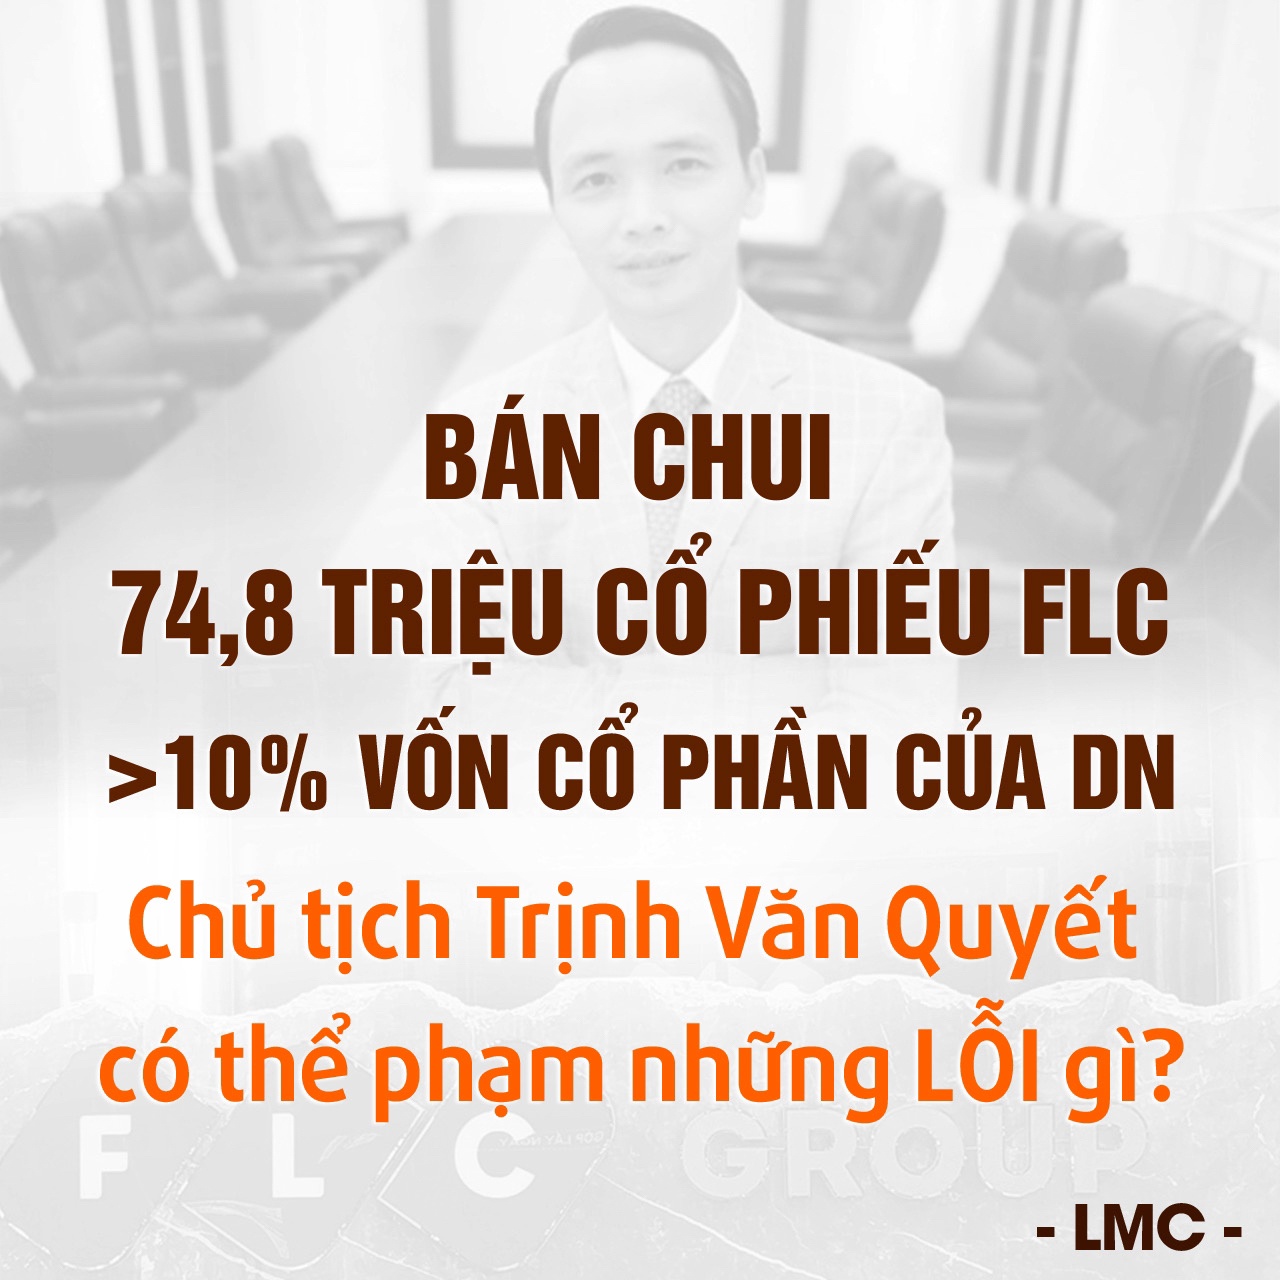 Bán chui 74,8 triệu cổ phiếu (>10% vốn cổ phần của DN), Chủ tịch Trịnh Văn Quyết có thể phạm những lỗi gì?